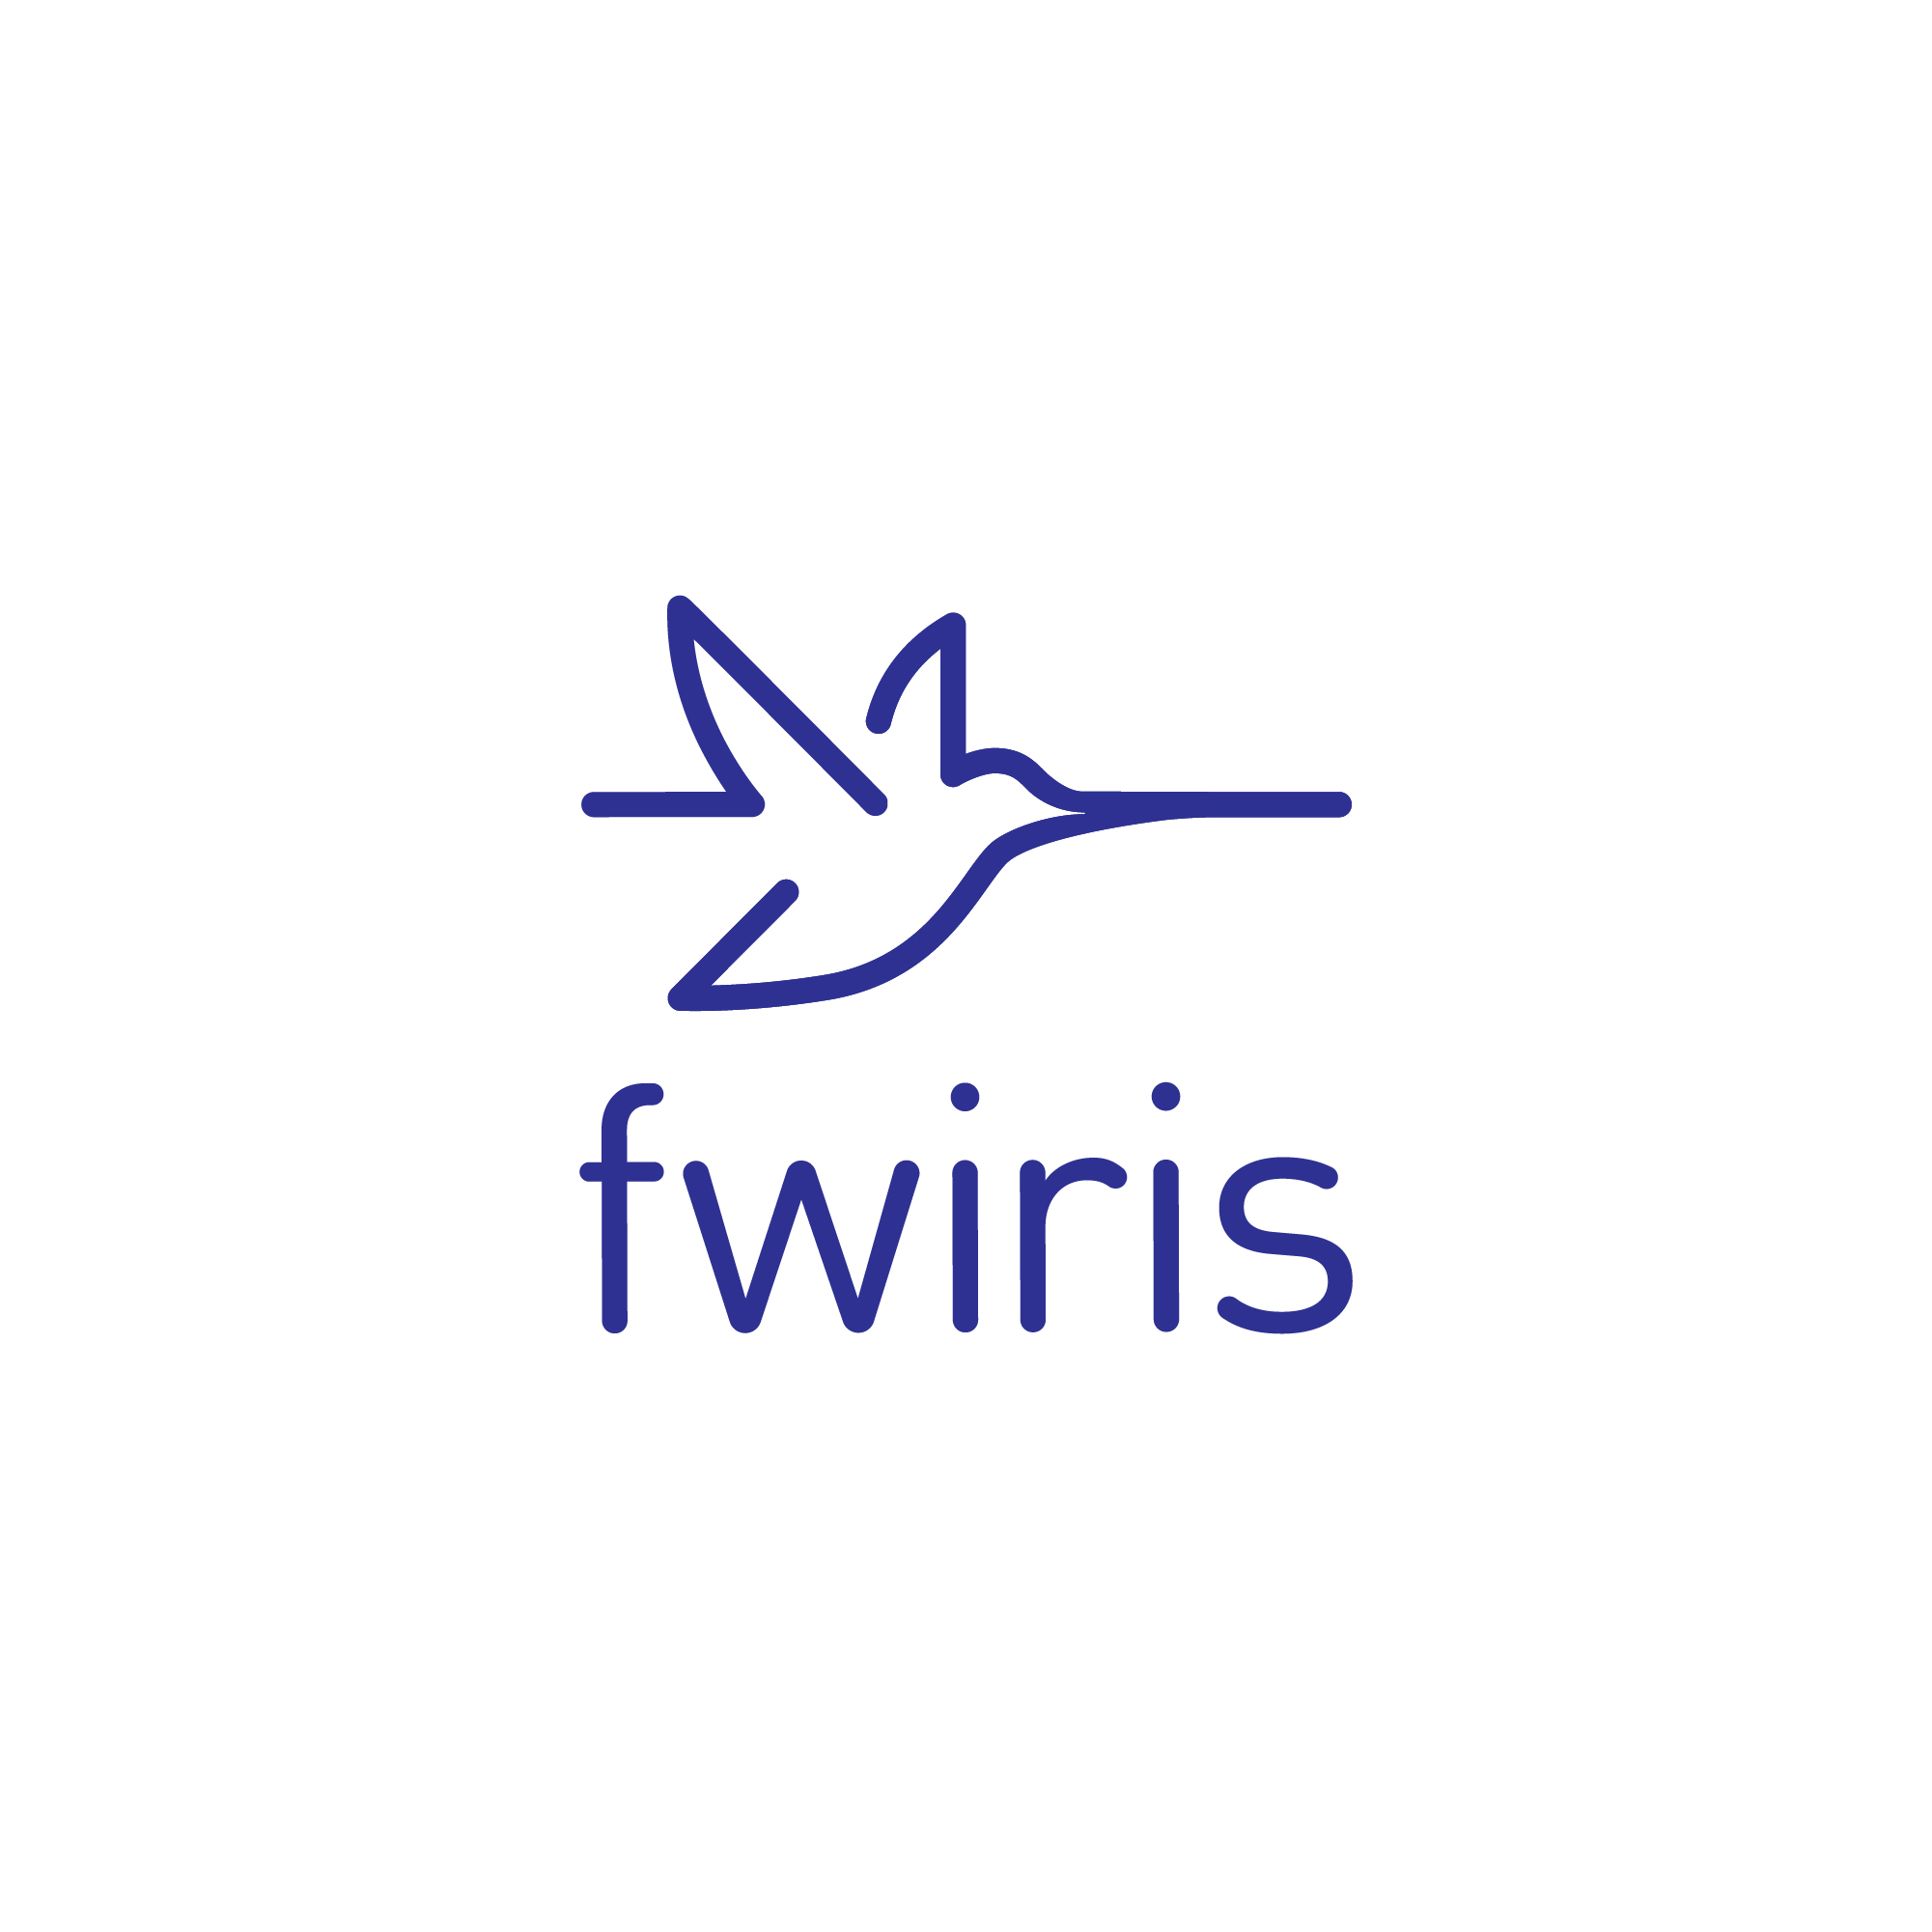 FWIRIS - lettering (2018)